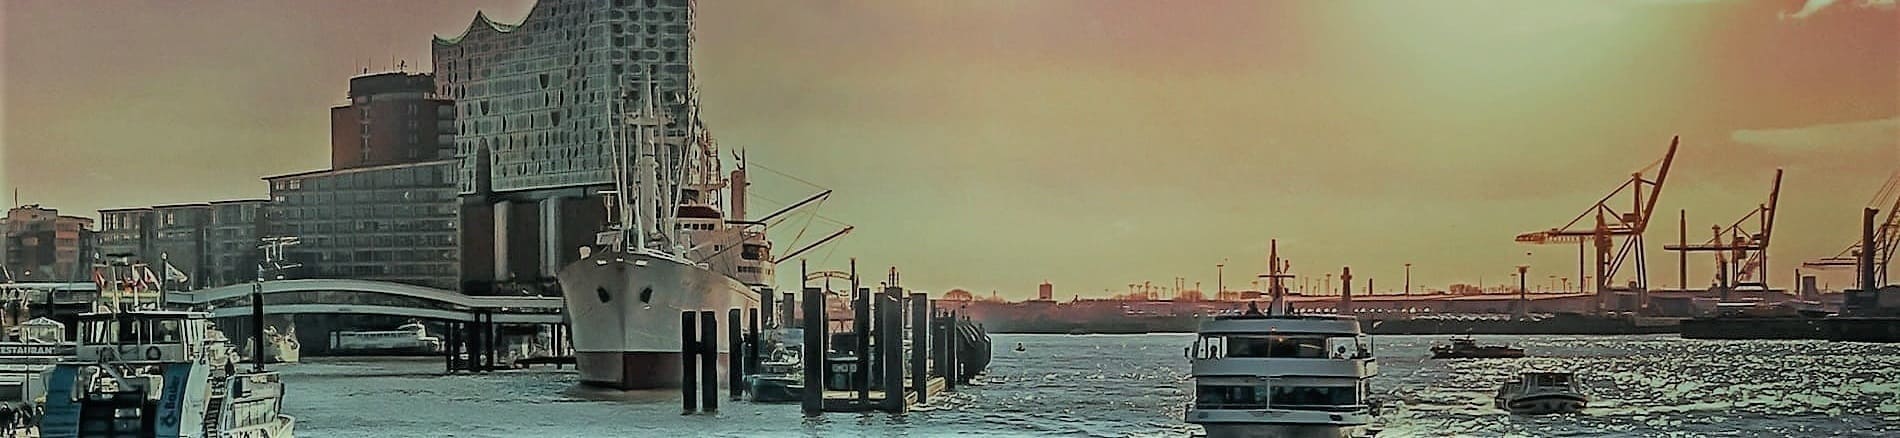 Die Elbe mit Blick auf das Schiff Cap San Diego, einst als Frachter und Passagierschiff auf der Südamerikaroute. Barkassen bei der Hafenrundfahrt, Hafenkräne zum Beladen von Containerschiffe und die Elbphilharmonie in Hamburg